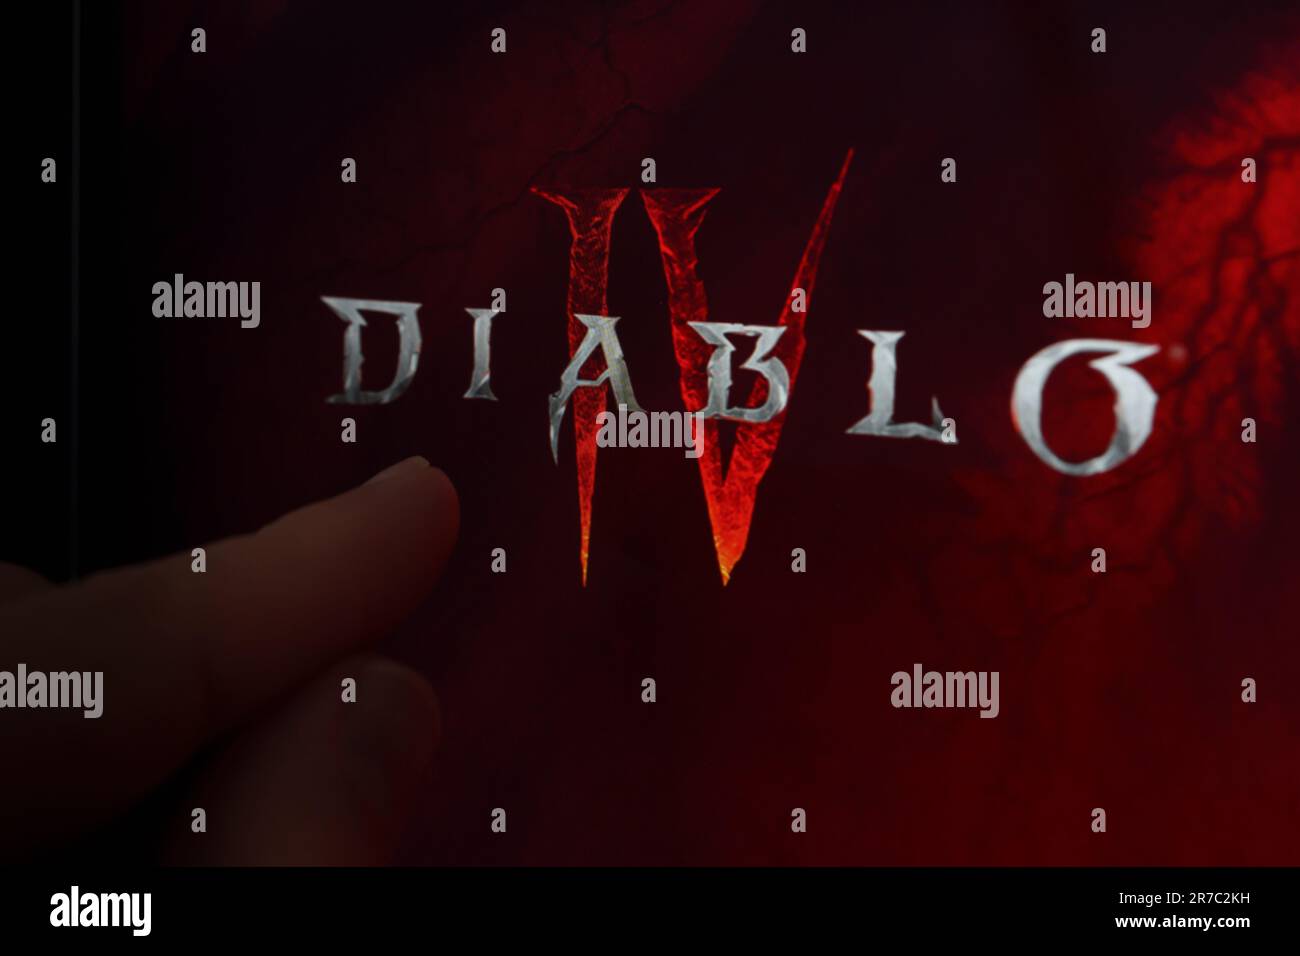 Diablo 4 logo de jeu vu sur l'écran et le doigt pointant vers lui. Diablo IV est un jeu développé par Blizzard Entertainment. Stafford, Royaume-Uni, Ju Banque D'Images